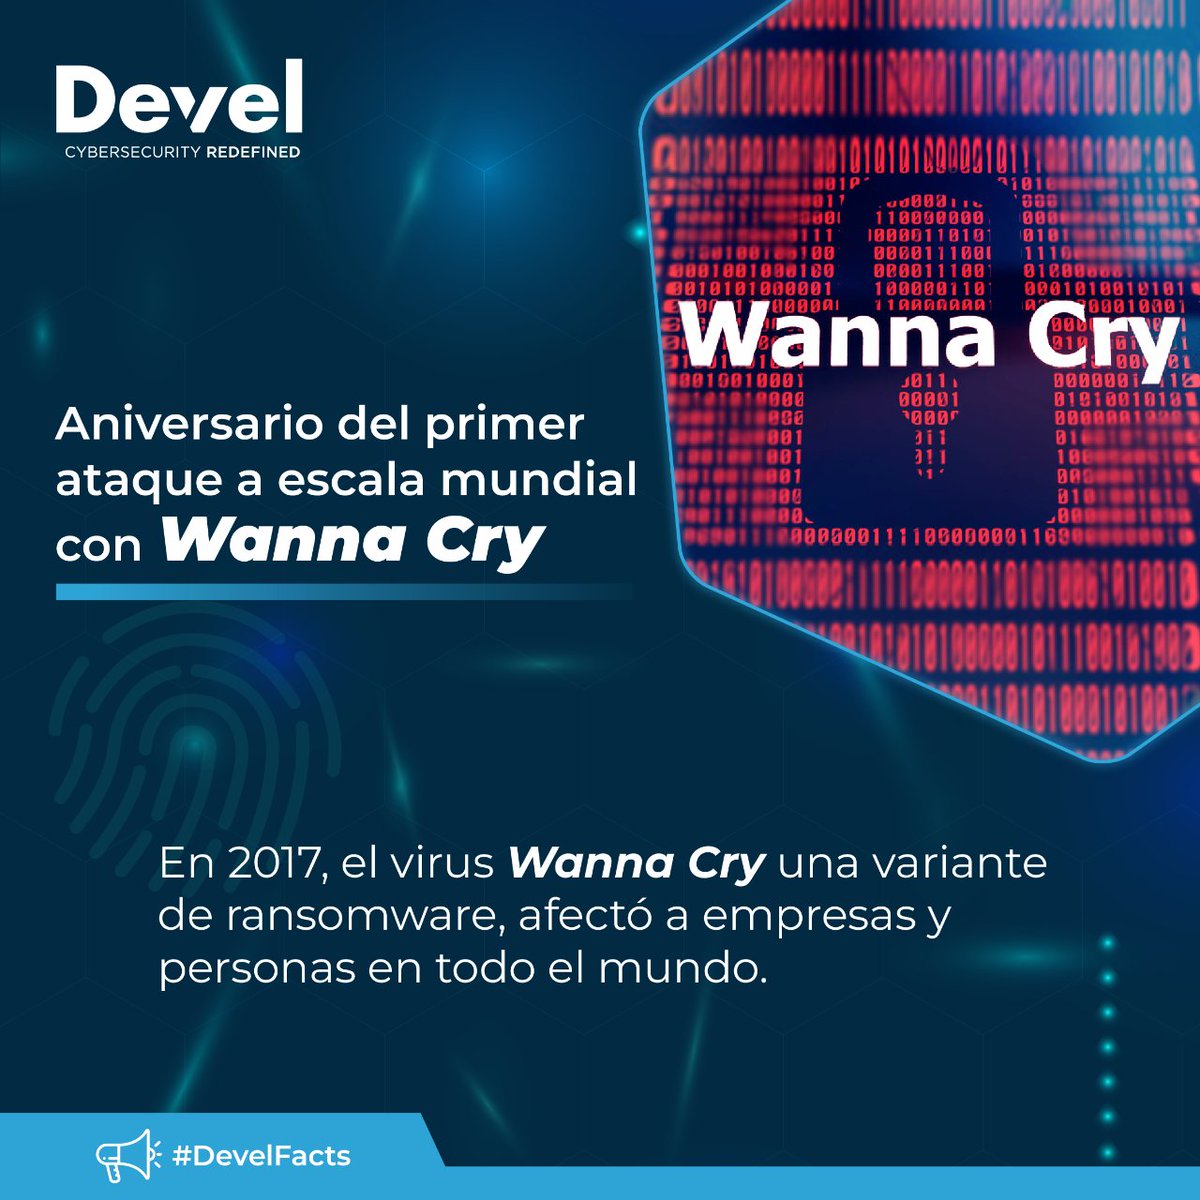 💻🌍 En 2017, el virus Wanna Cry una variante de ransomware, afectó a empresas y personas en todo el mundo.

Hoy que celebramos su aniversario, recuerda que la ciberdelincuencia sigue siendo una amenaza real.🛡️

#Ciberseguridad #DevelGroup #DevelFacts